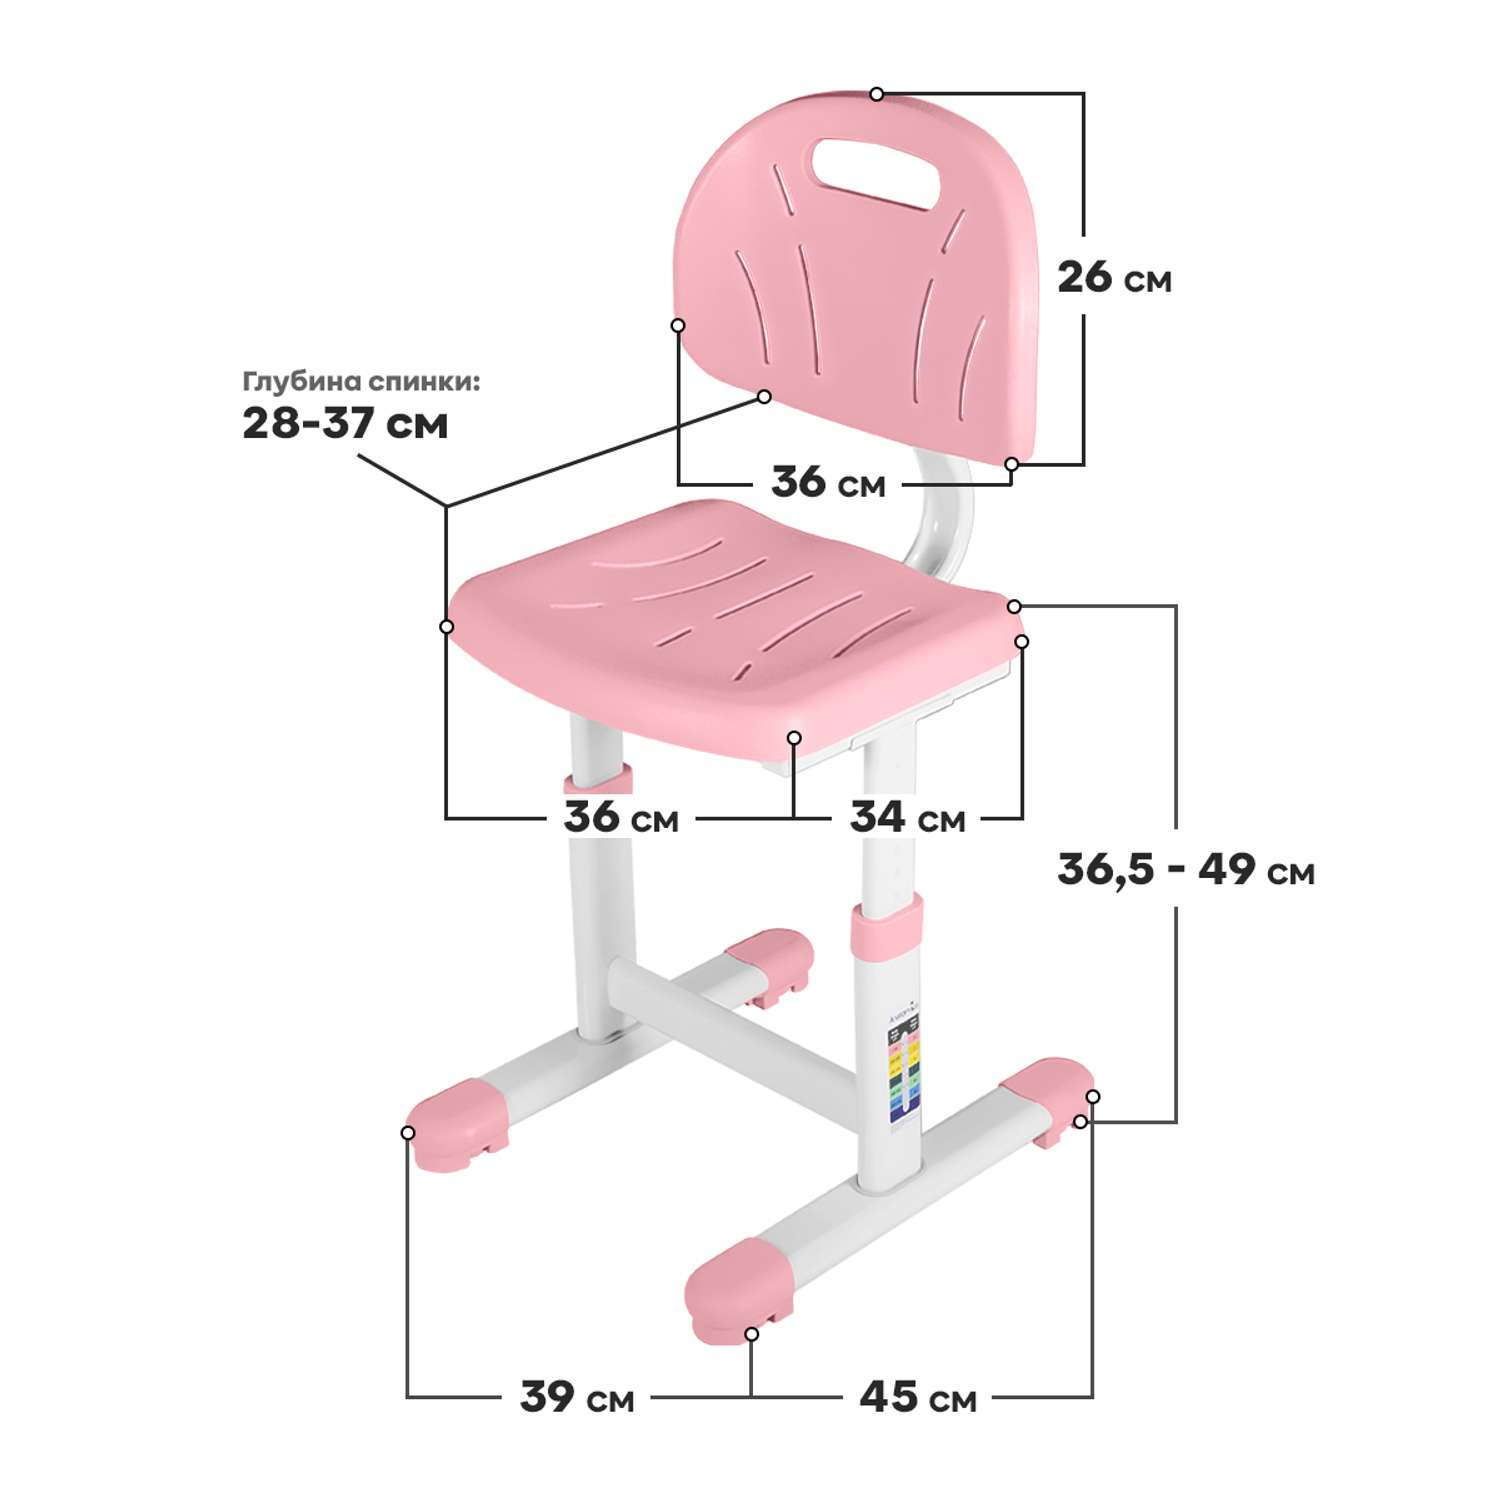 Растущий детский стул Anatomica Lux-02 светло-розовый - фото 2